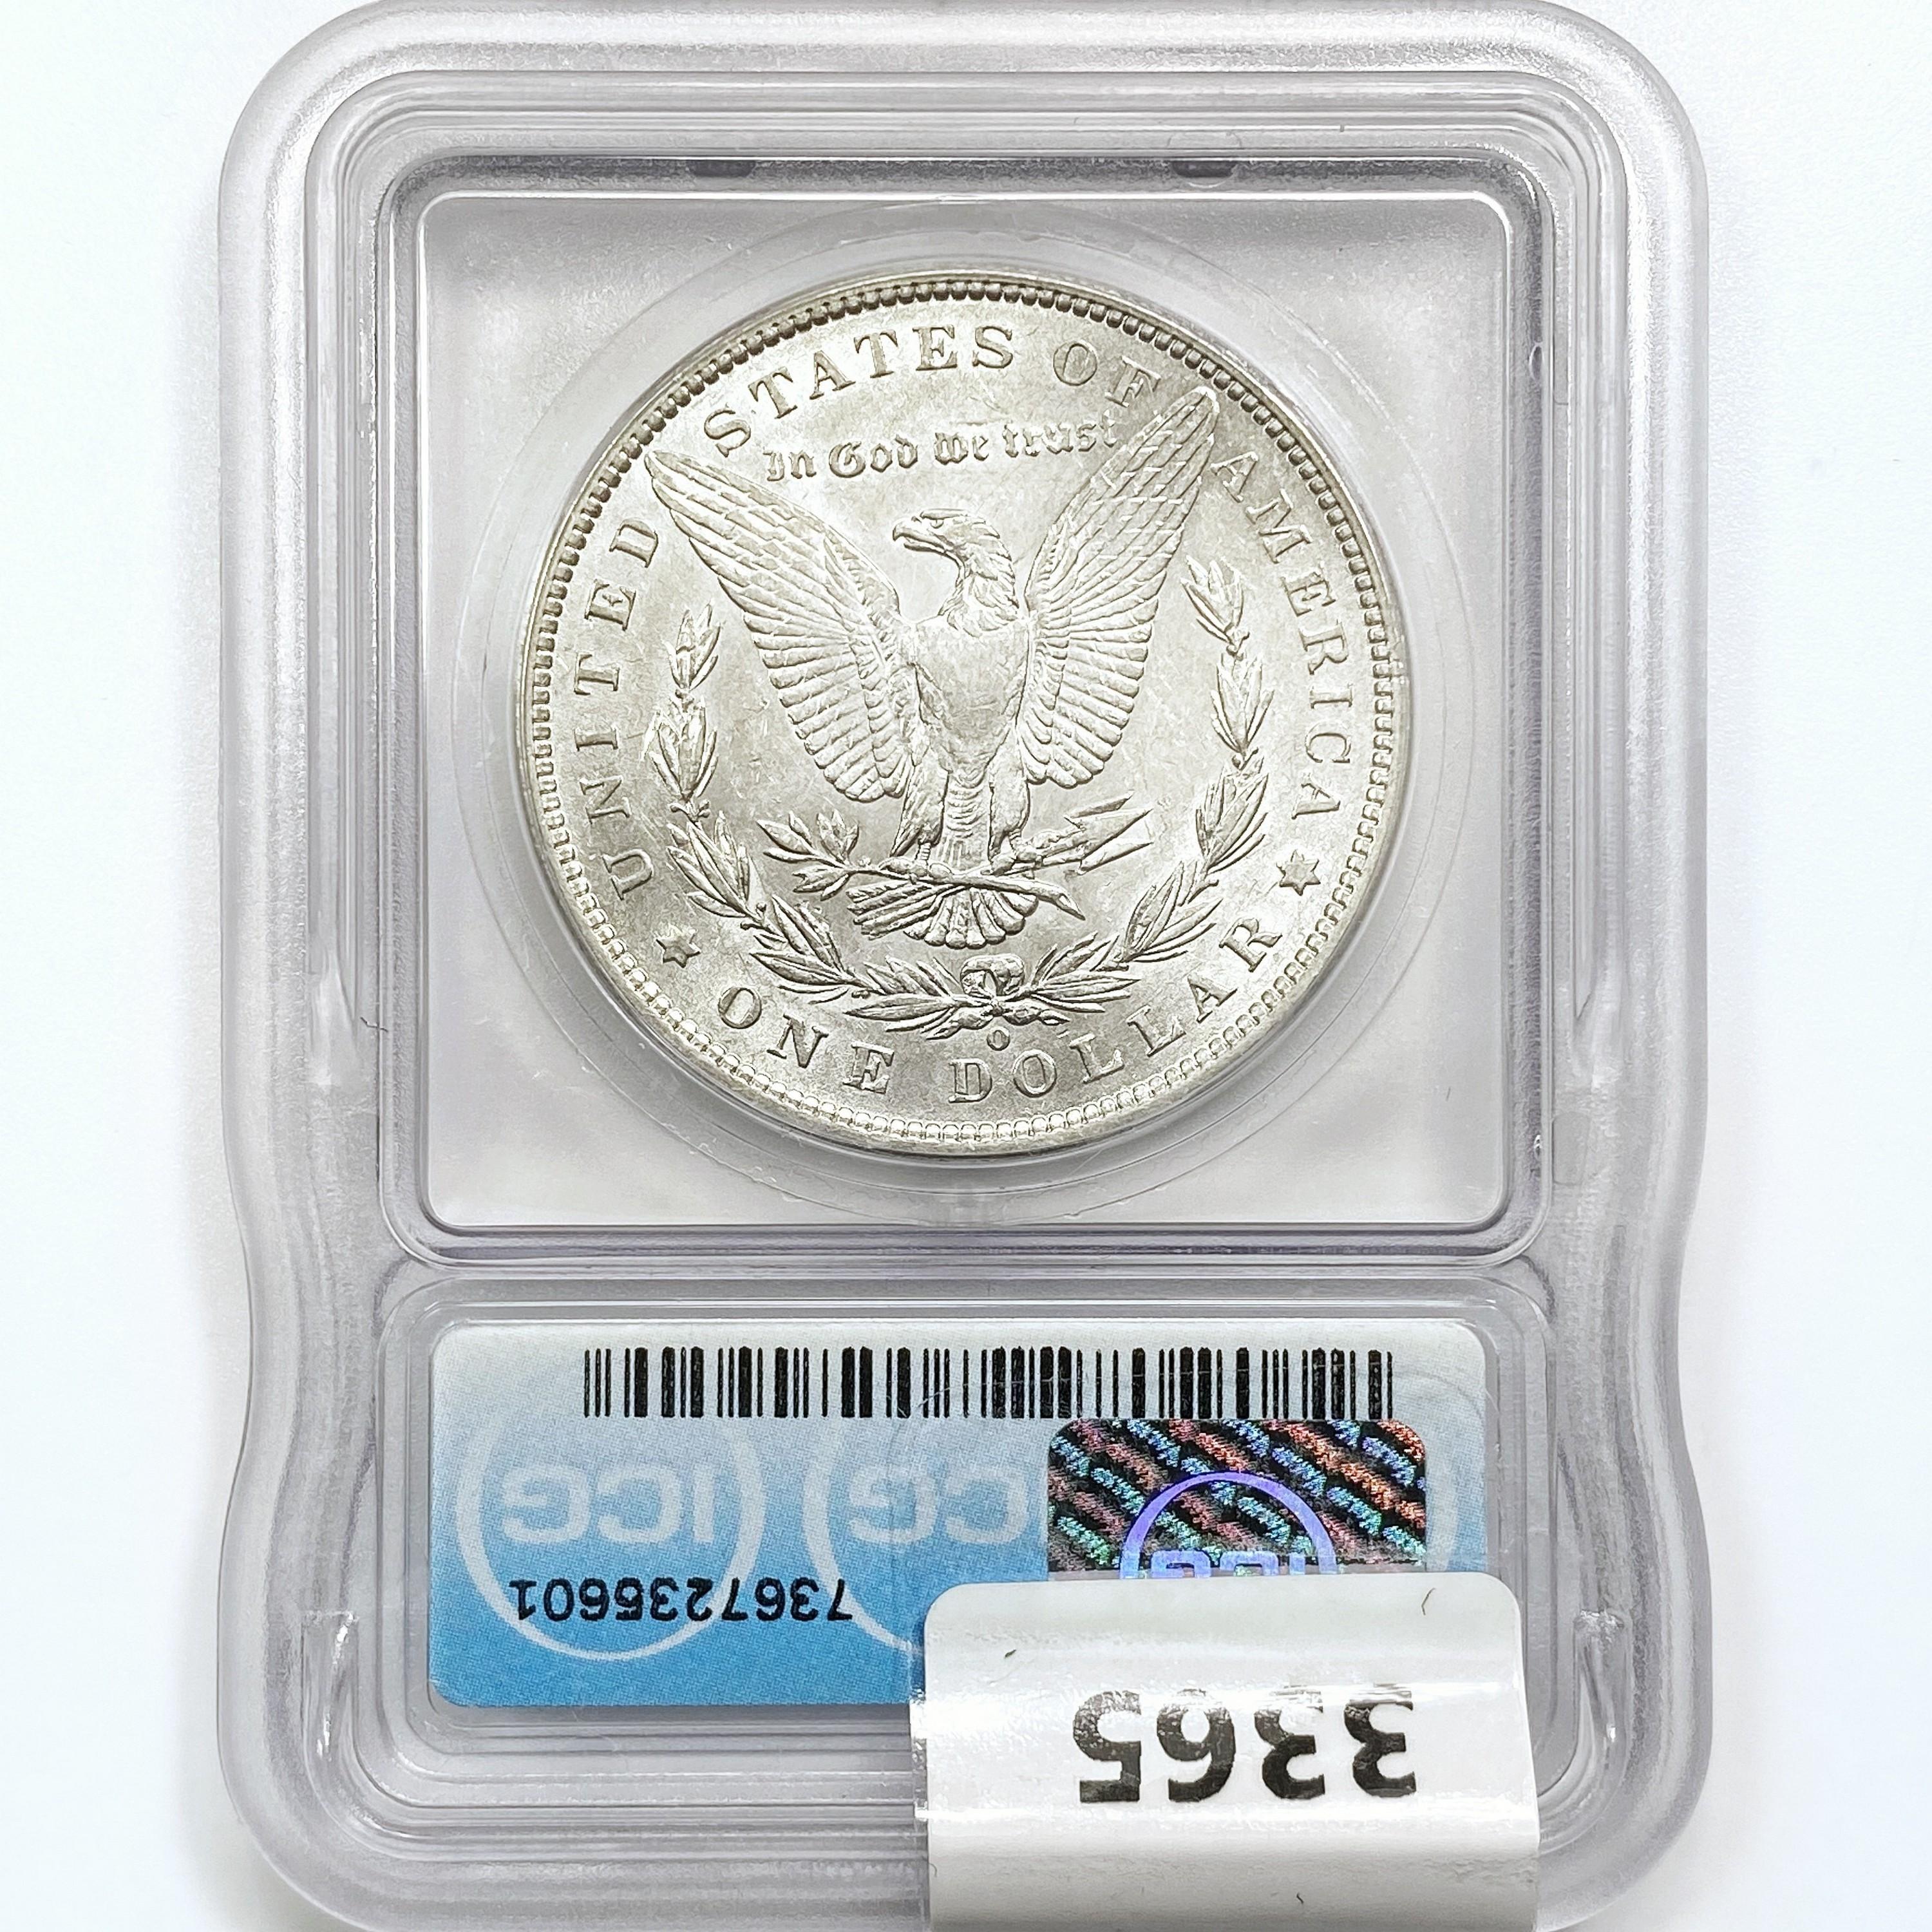 1889-O Morgan Silver Dollar ICG AU55